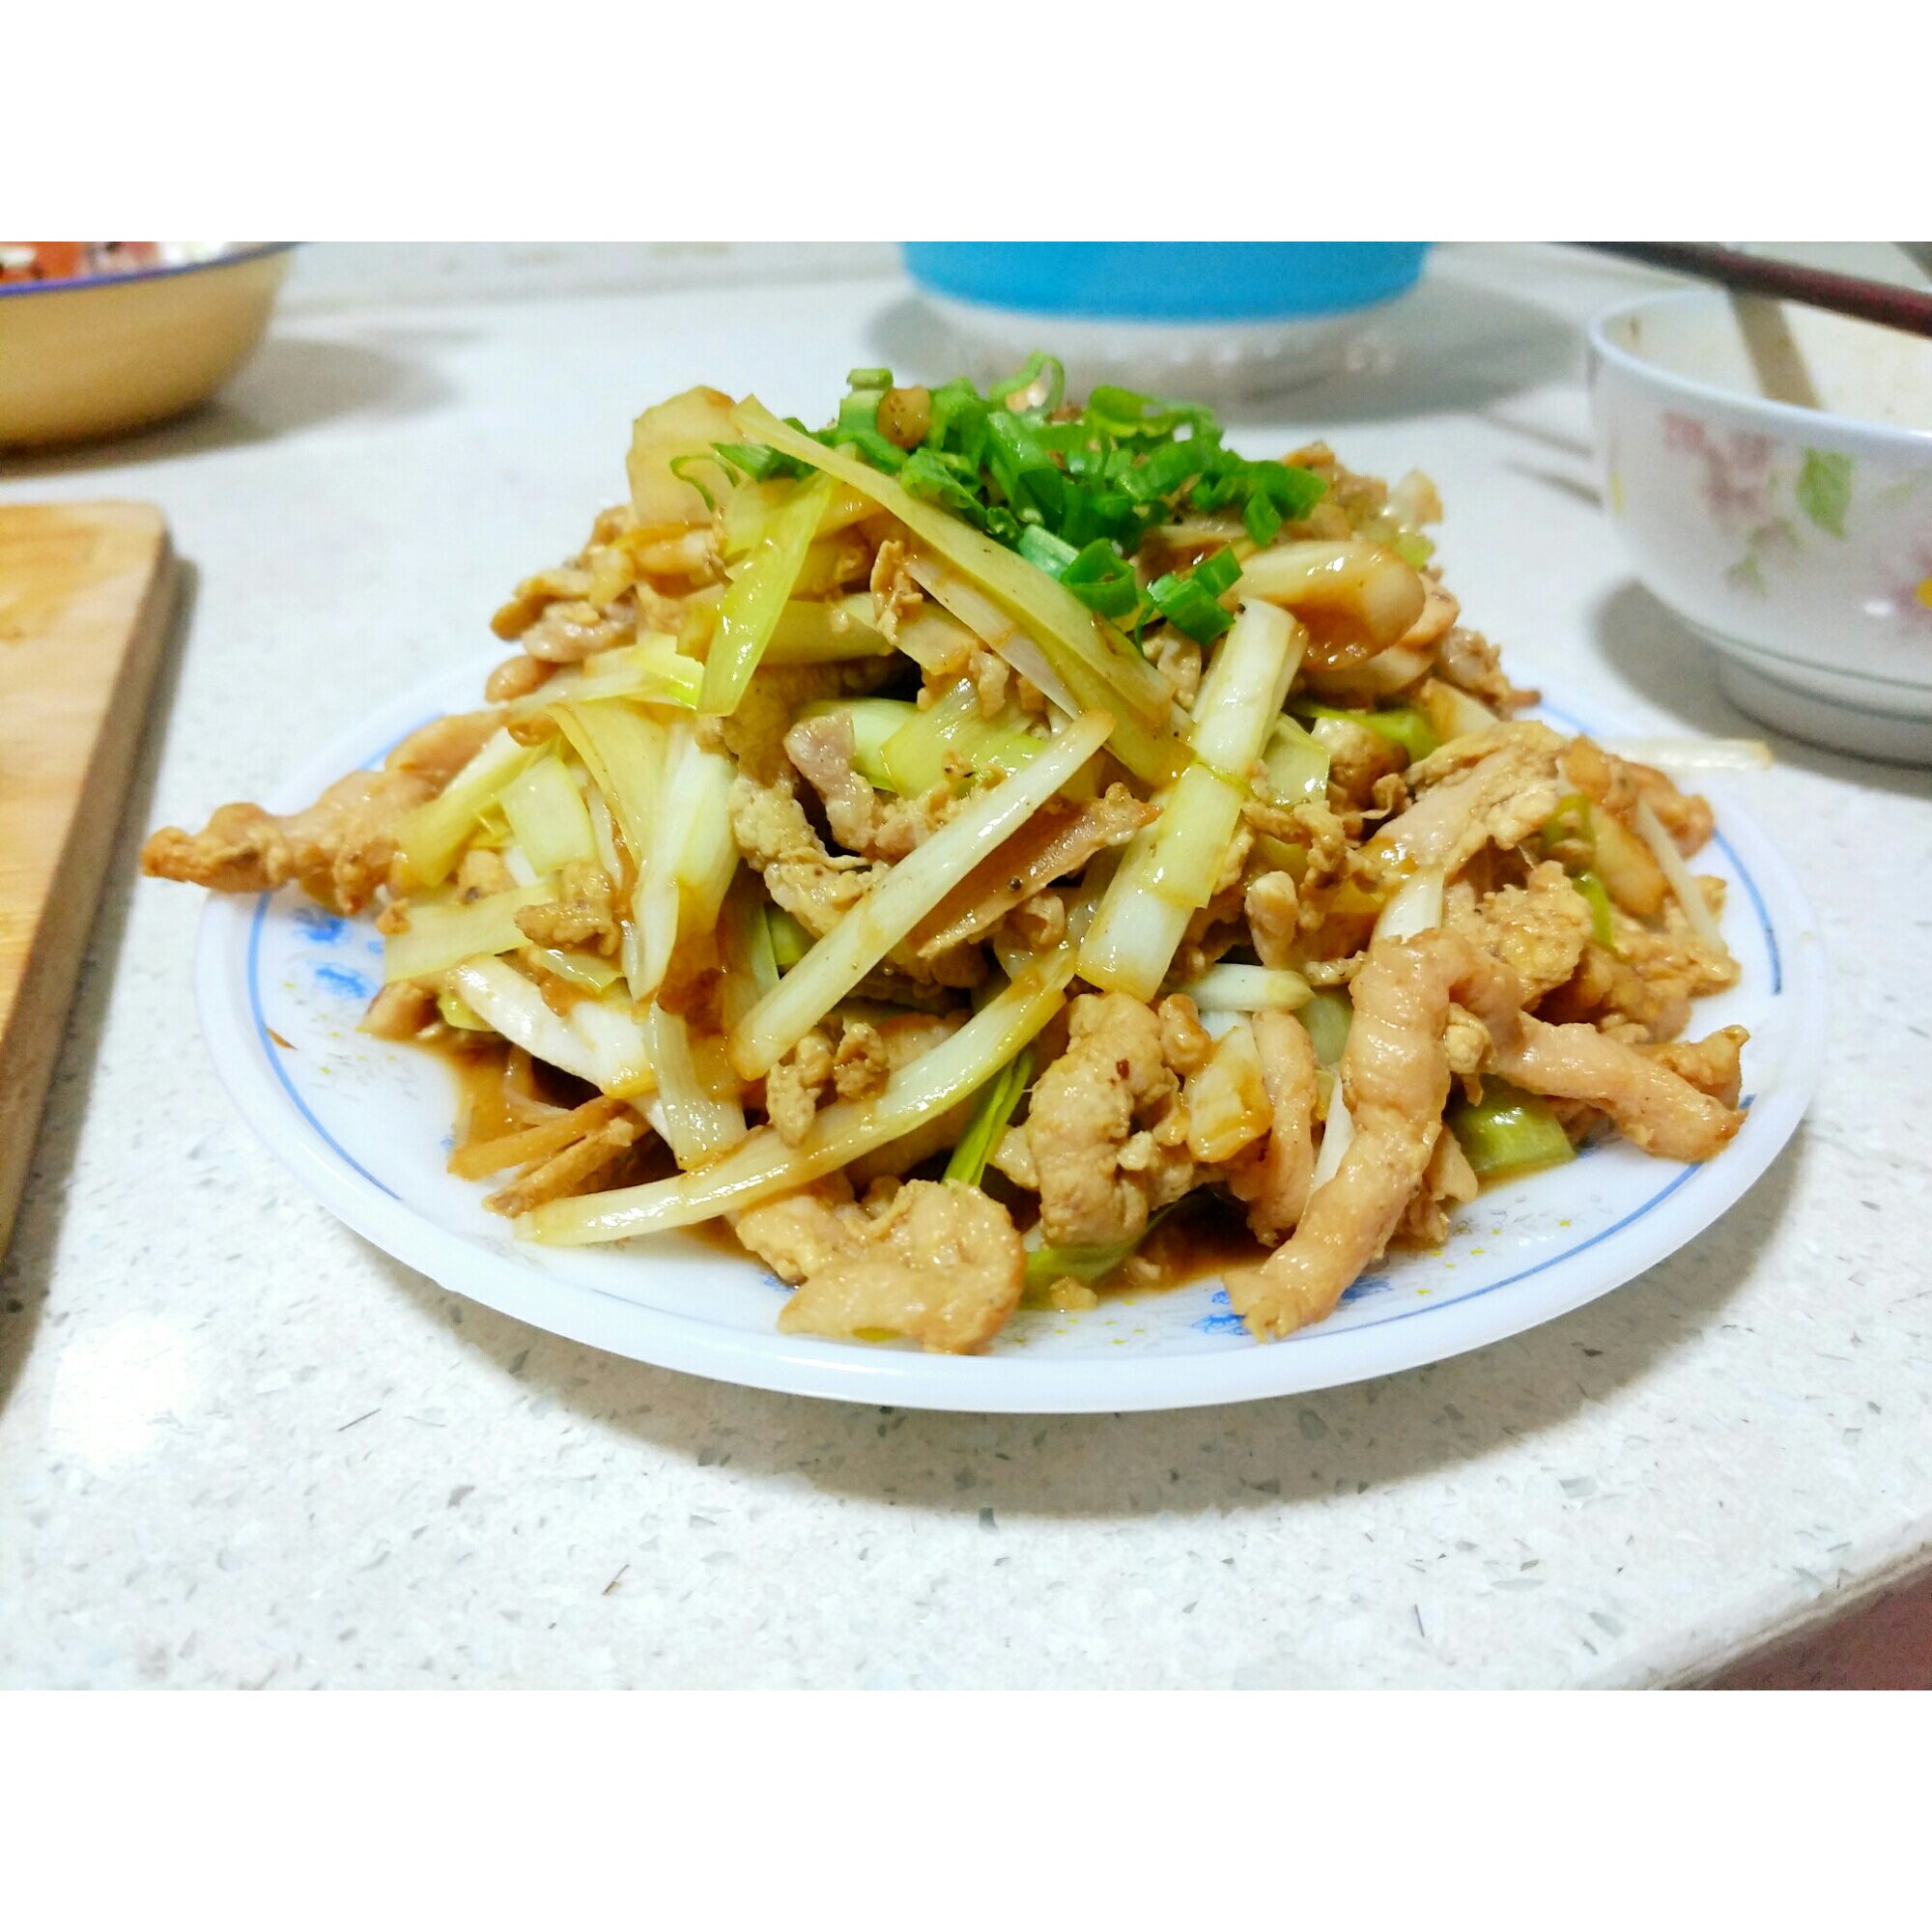 韭黄炒肉